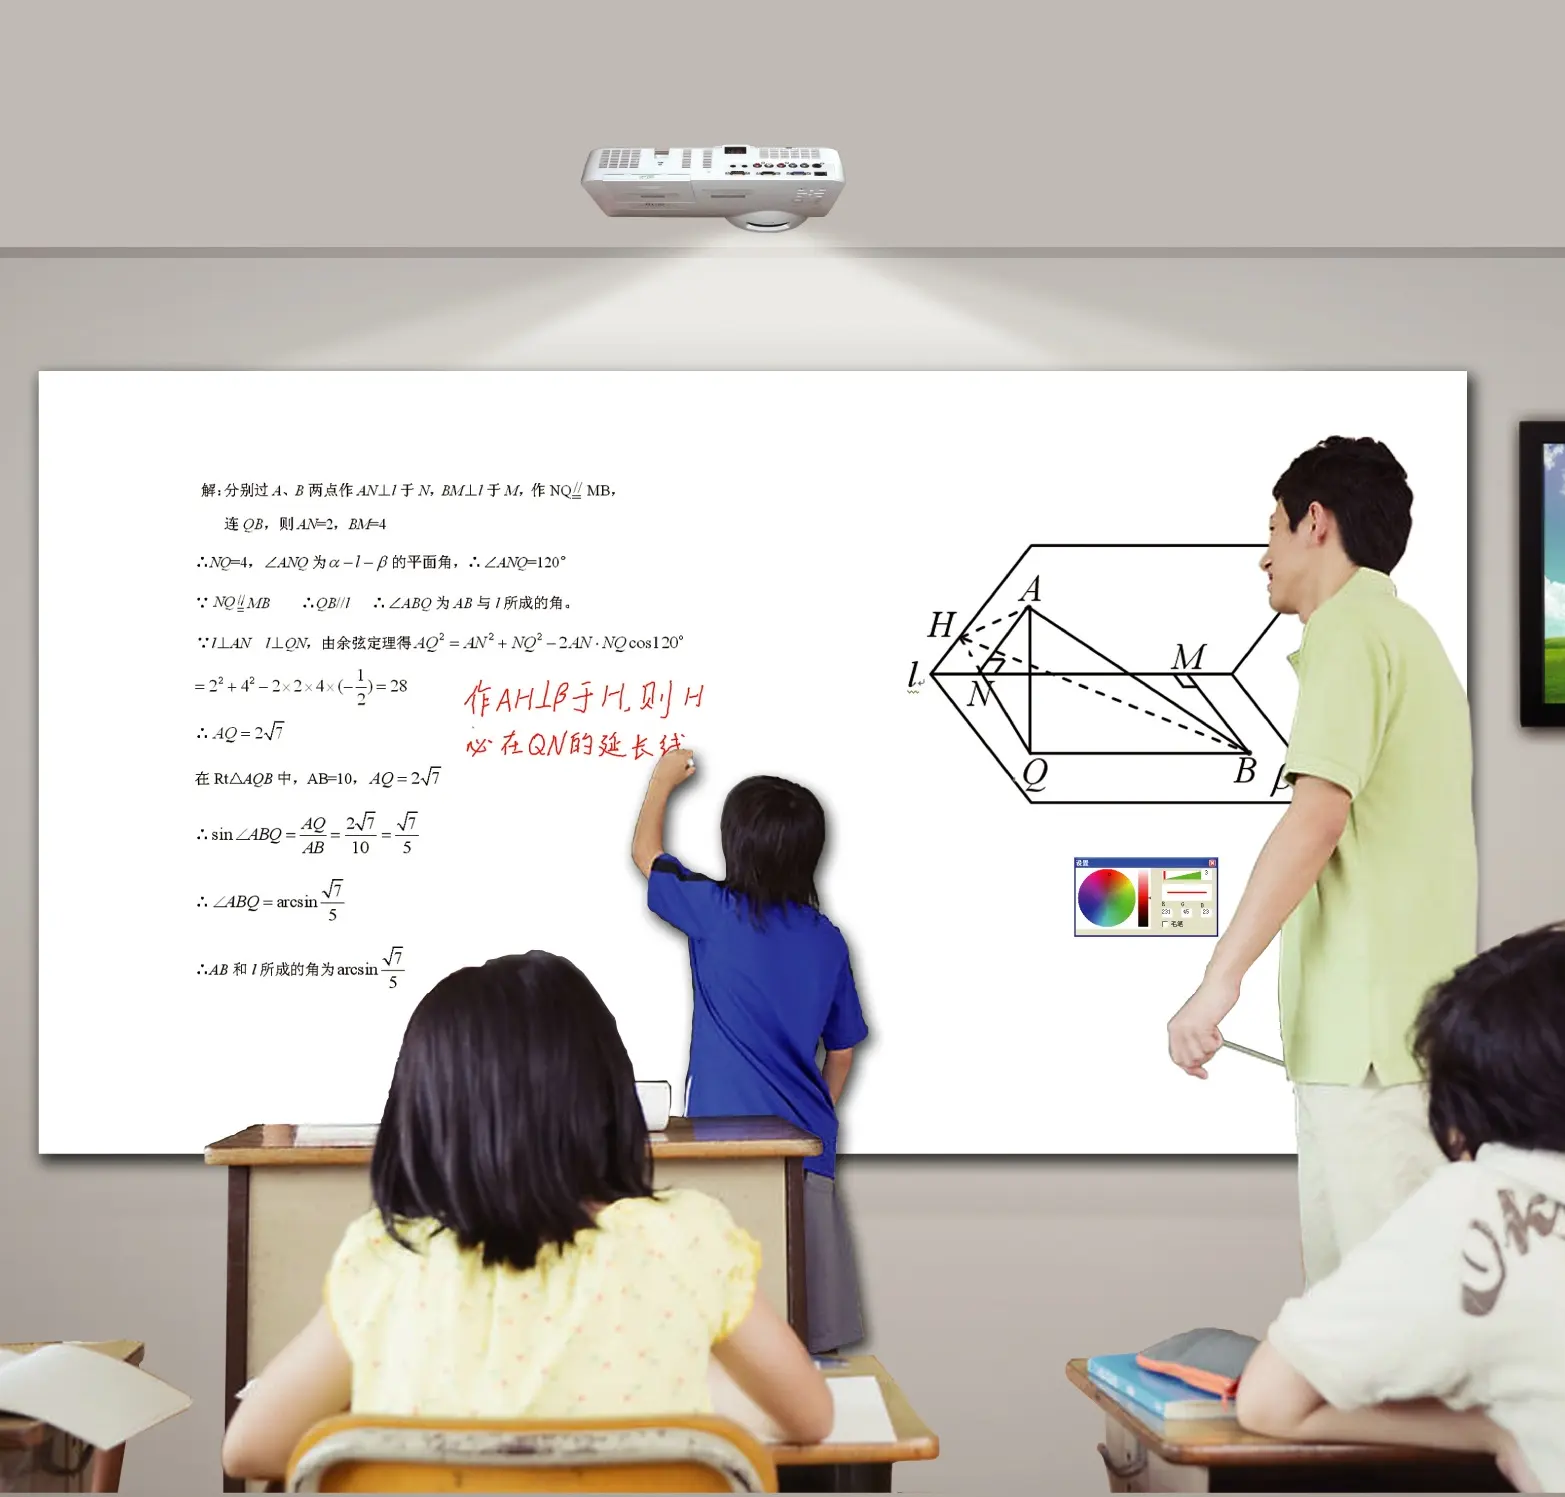 Tableau blanc interactif pour classe dynamique, nouvelle technologie, réunion intelligente